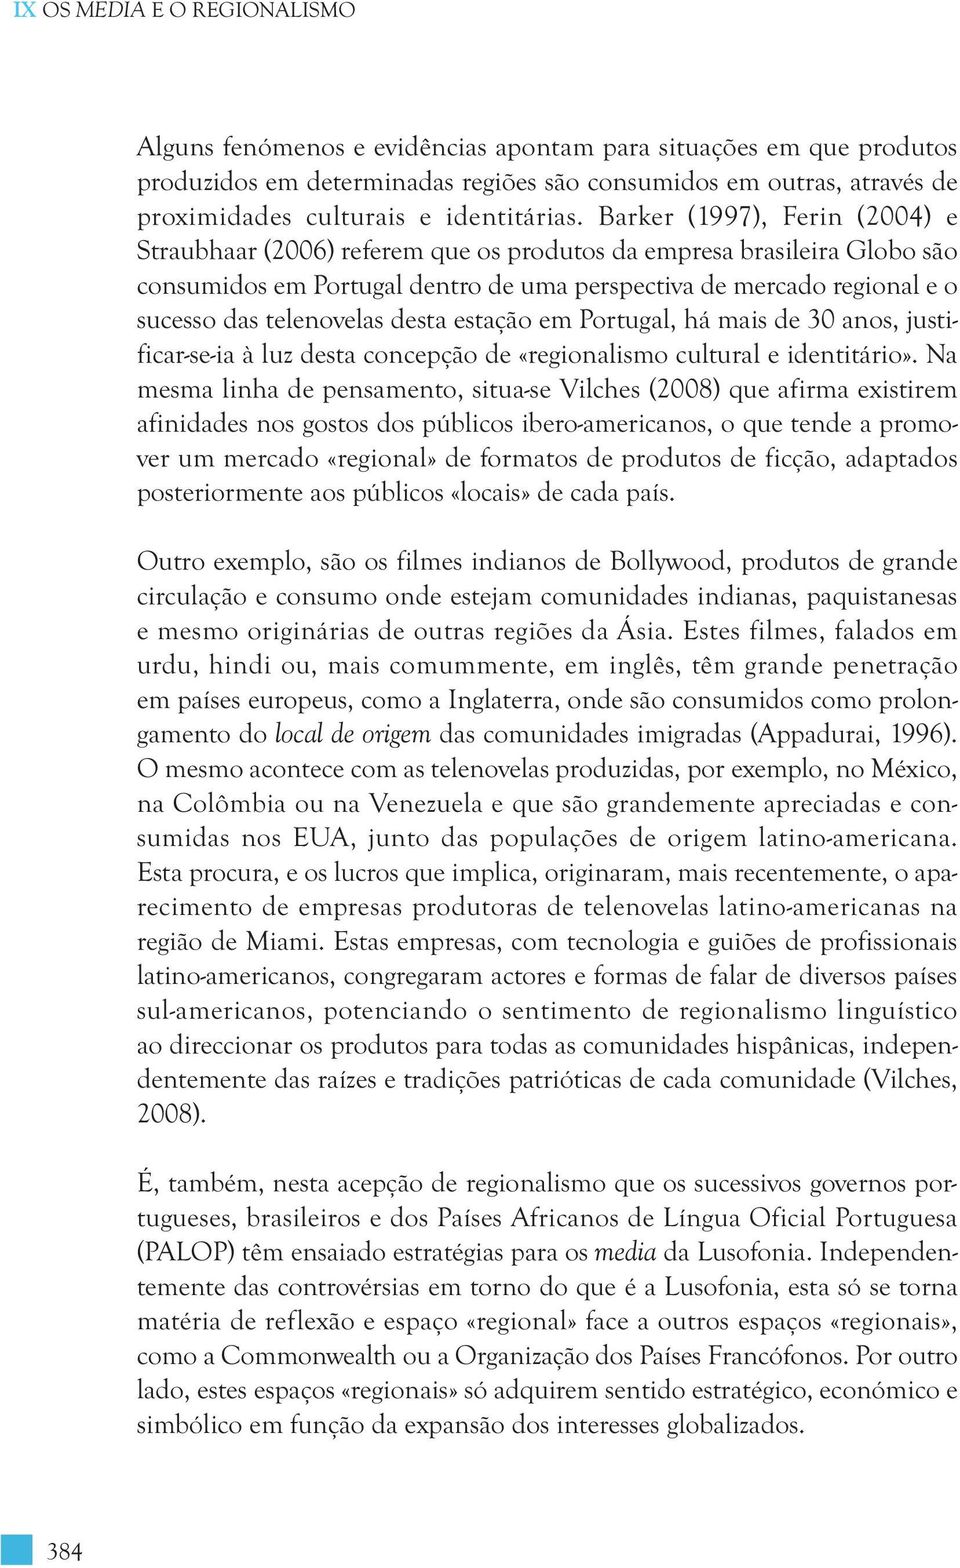 Barker (1997), Ferin (2004) e Straubhaar (2006) referem que os produtos da empresa brasileira Globo são consumidos em Portugal dentro de uma perspectiva de mercado regional e o sucesso das